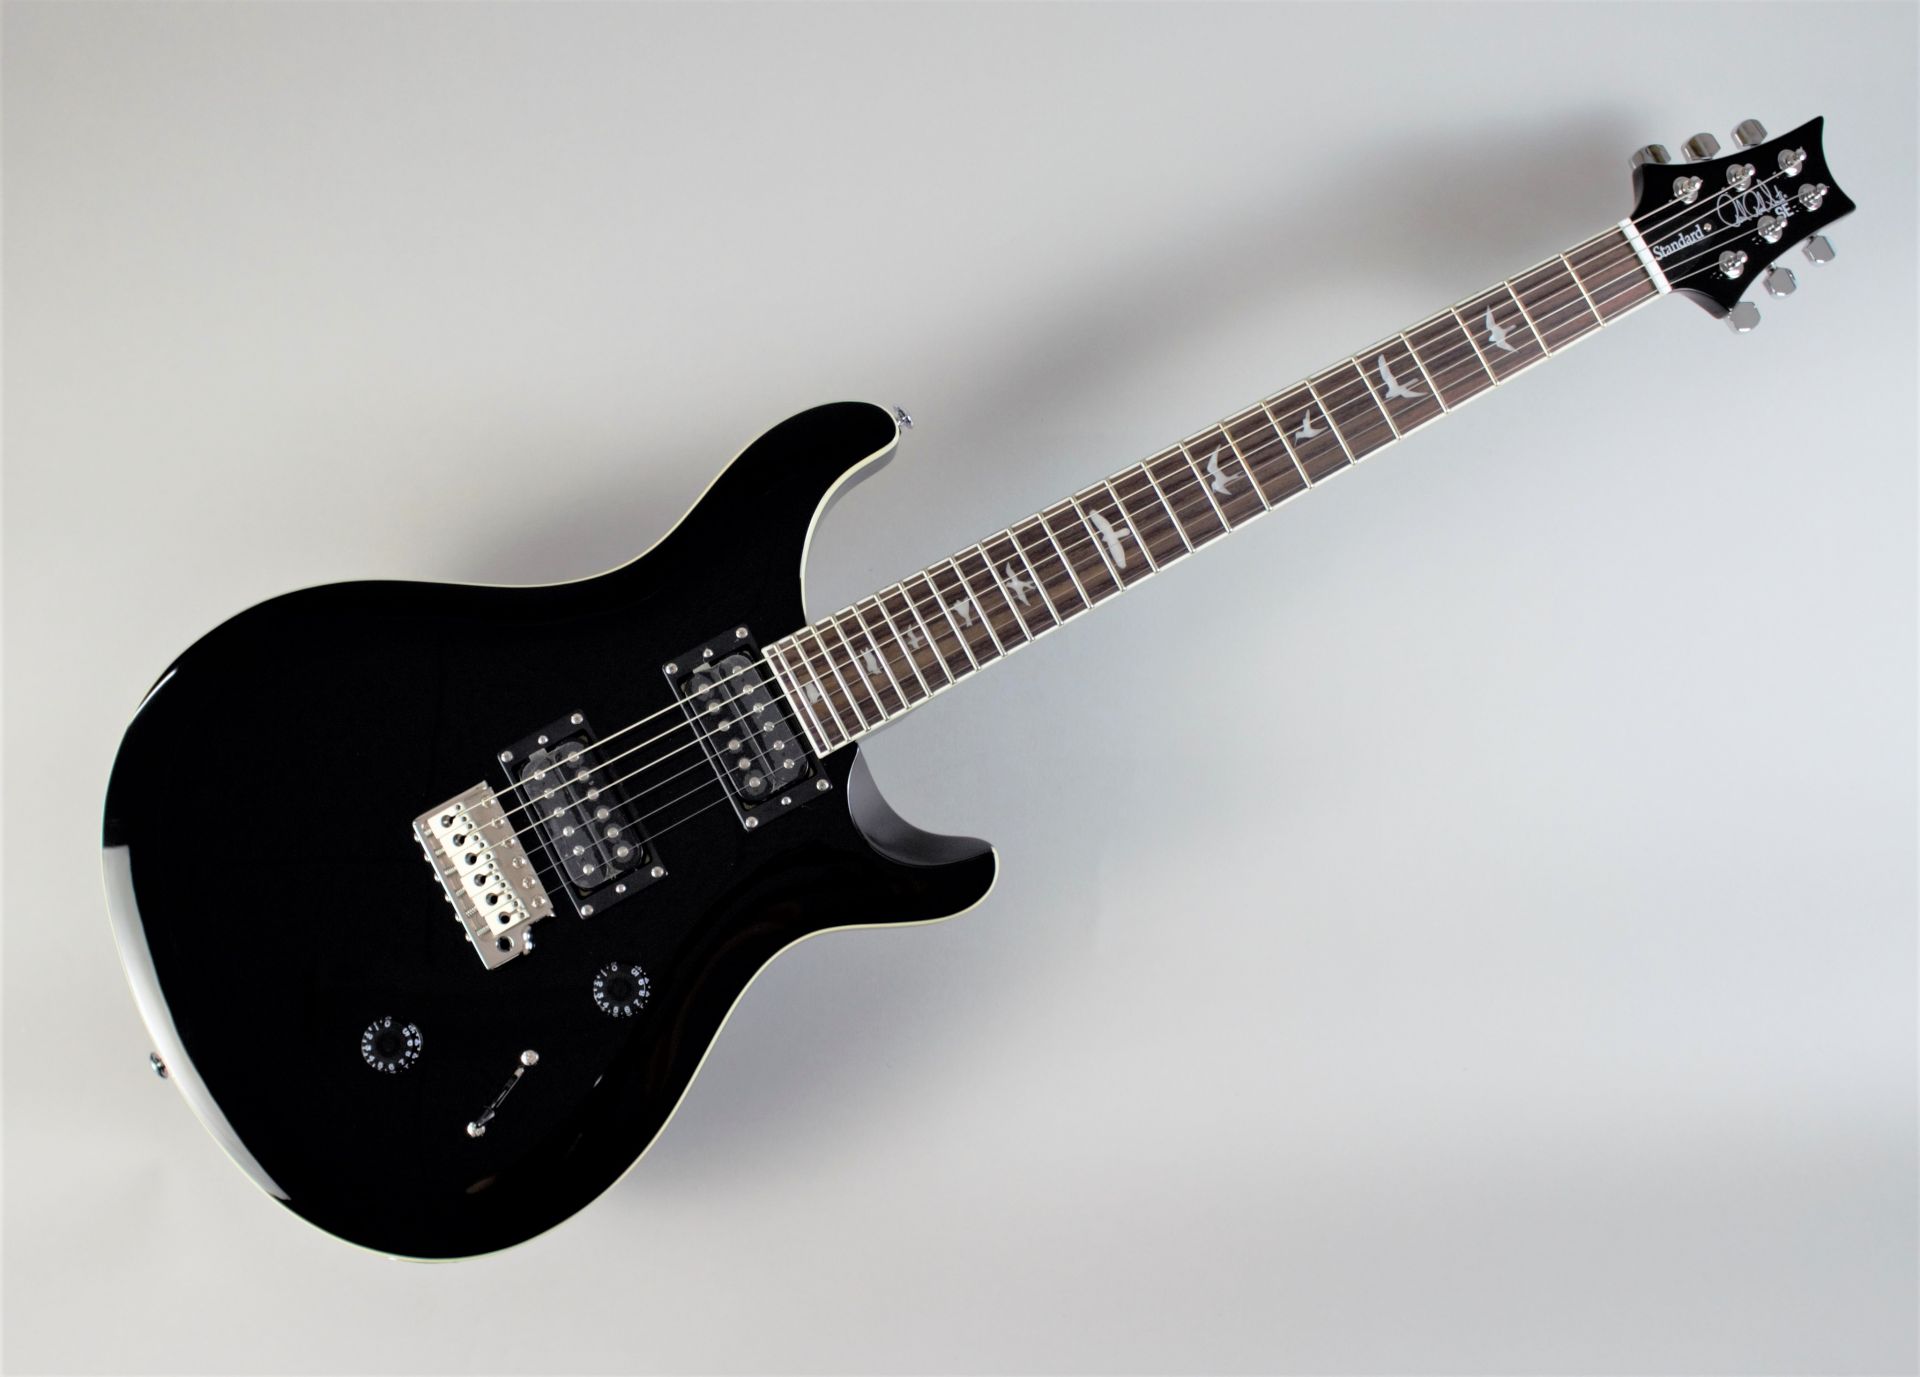 *ついに入荷！精悍なBLACKカラーを身にまとったSE Standard 24 「初めてのギター」にも「“これぞ”の1本」にも最適なギター「PRS SE Standard 24」 今回このオリジナルカラーを採用した島村楽器オーダーモデルが発売しました。 - PRS STANDARD 24シリーズをベ […]